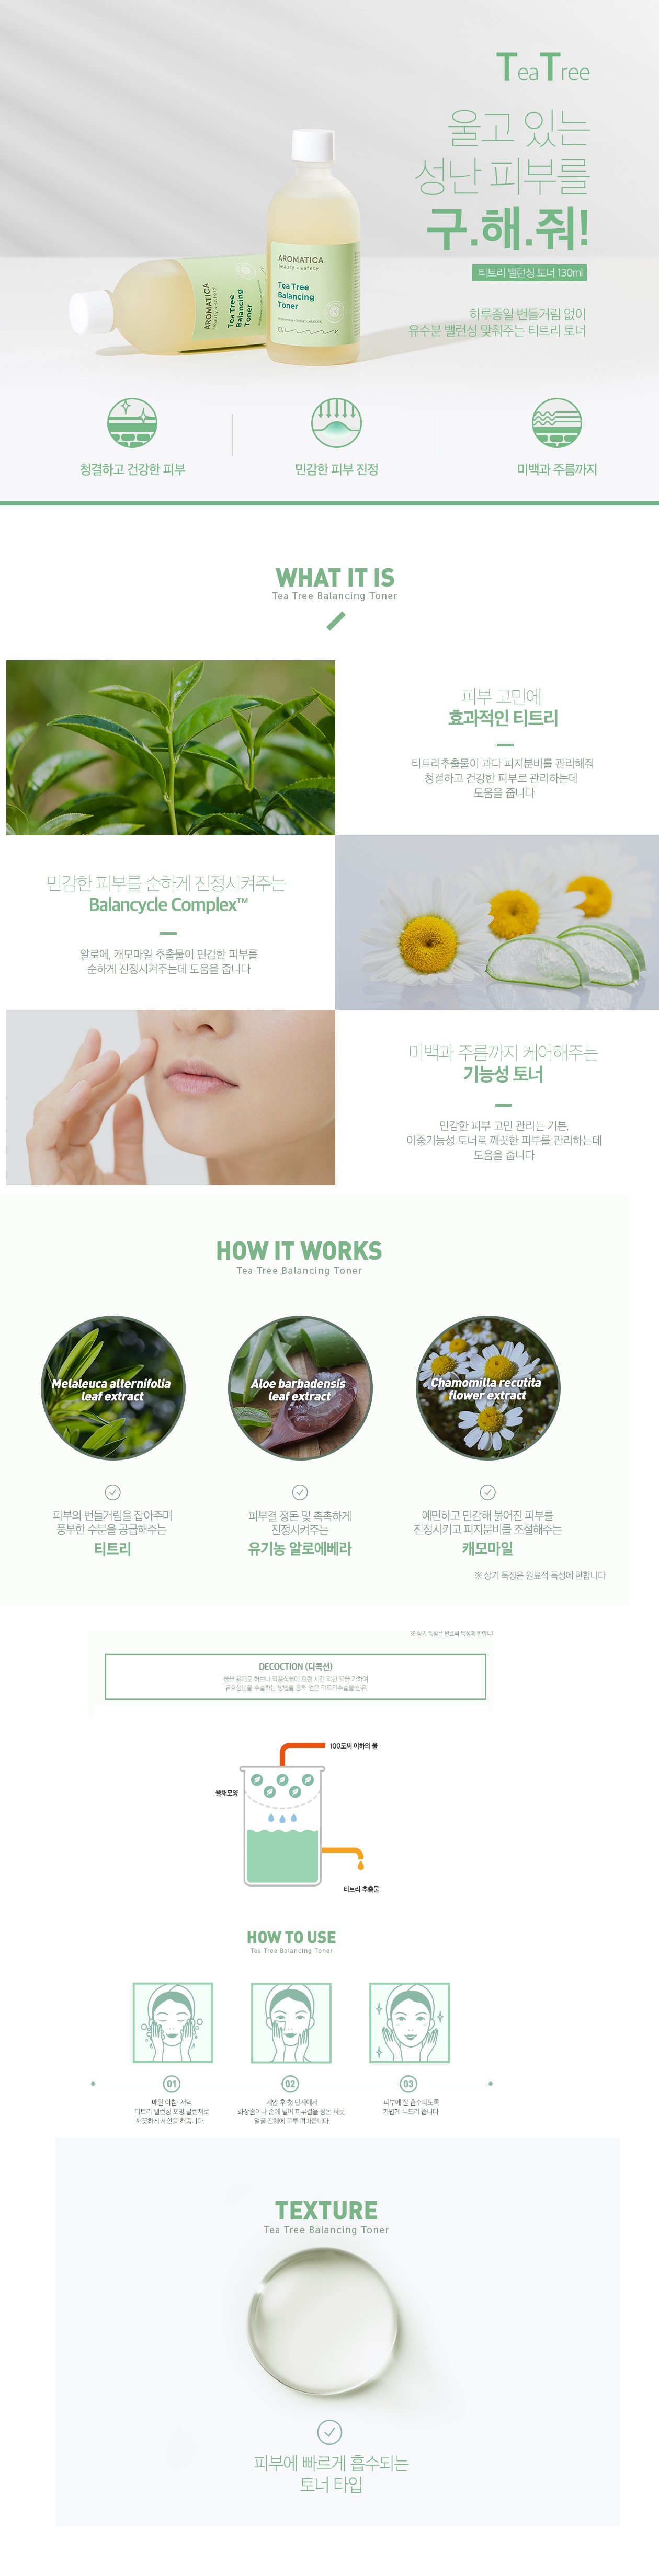 Aromatica Tea tree Balancing Toner korean cosmetic makeup product online shop malaysia china india1